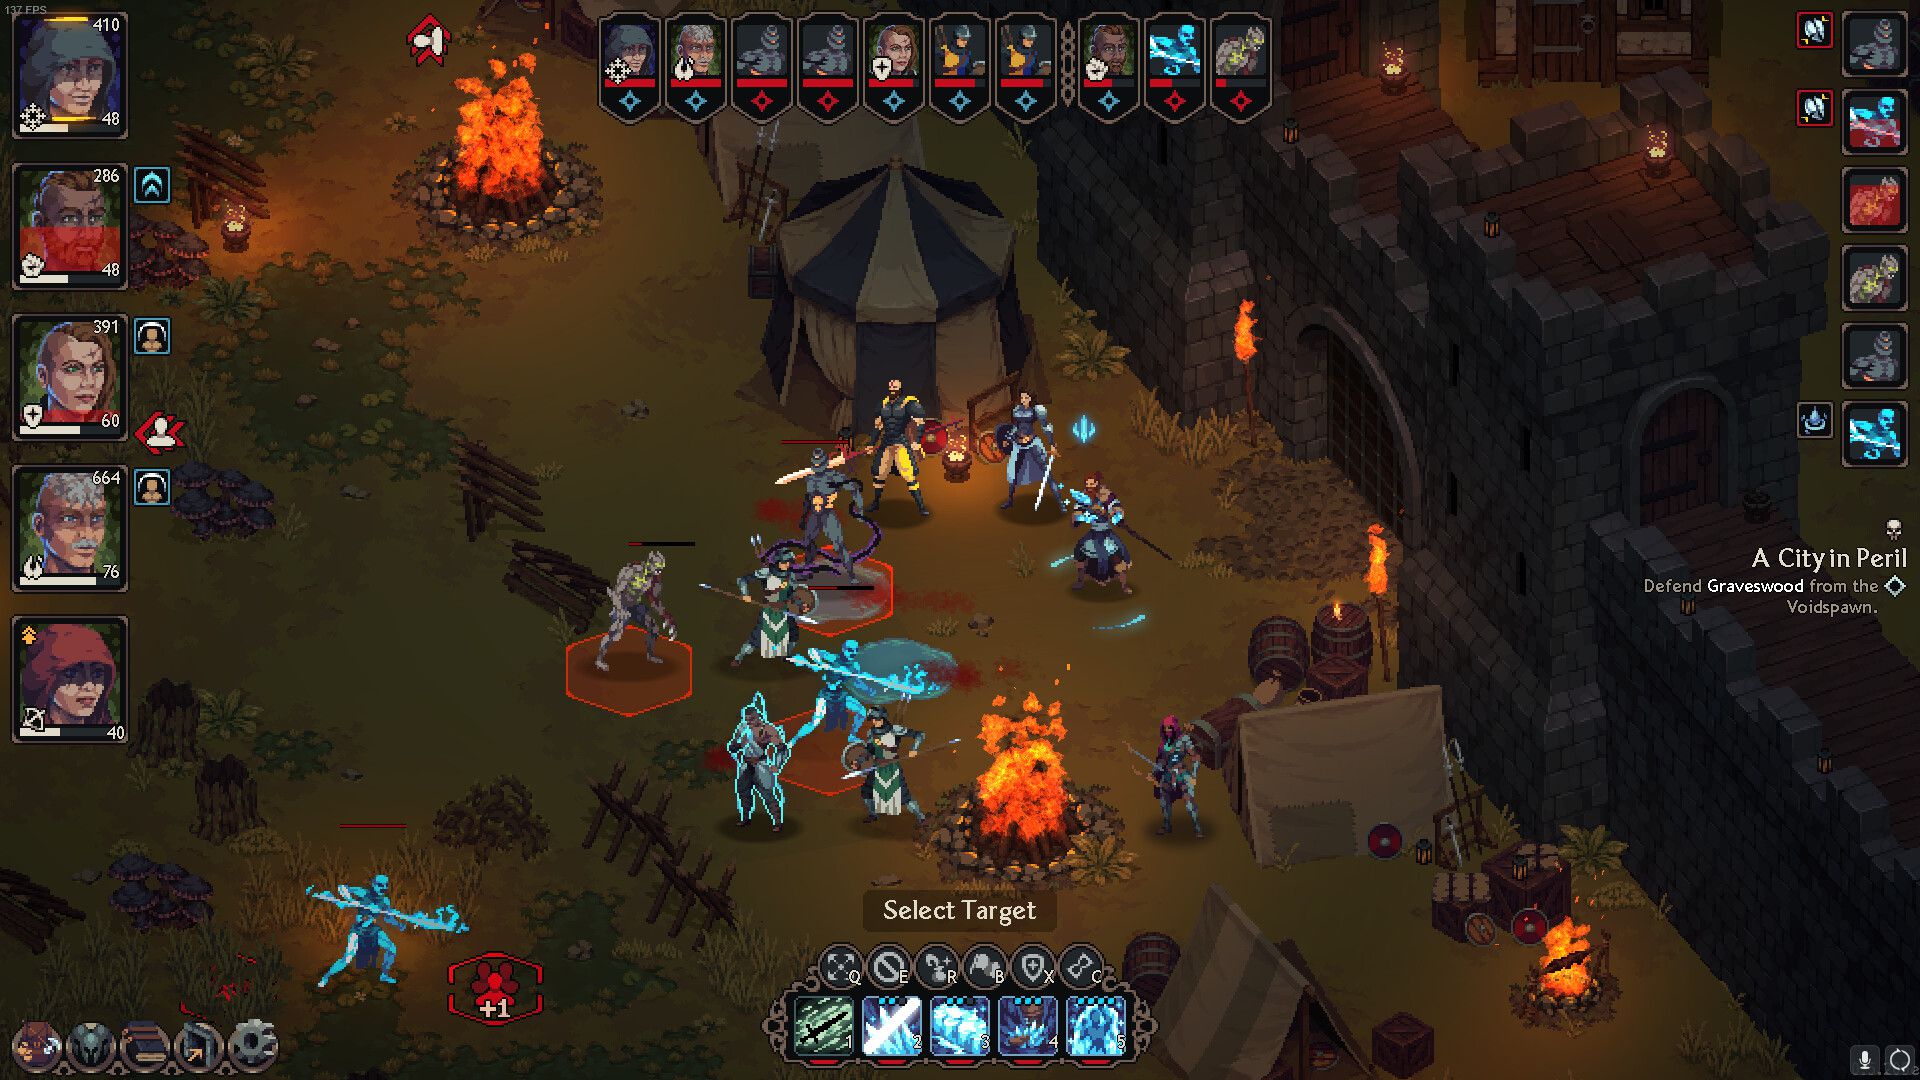 Image: Les héros se battent contre des spectres bleus dans une caverne souterraine, avec des éclats de magma entourant la bataille, dans The Iron Oath.